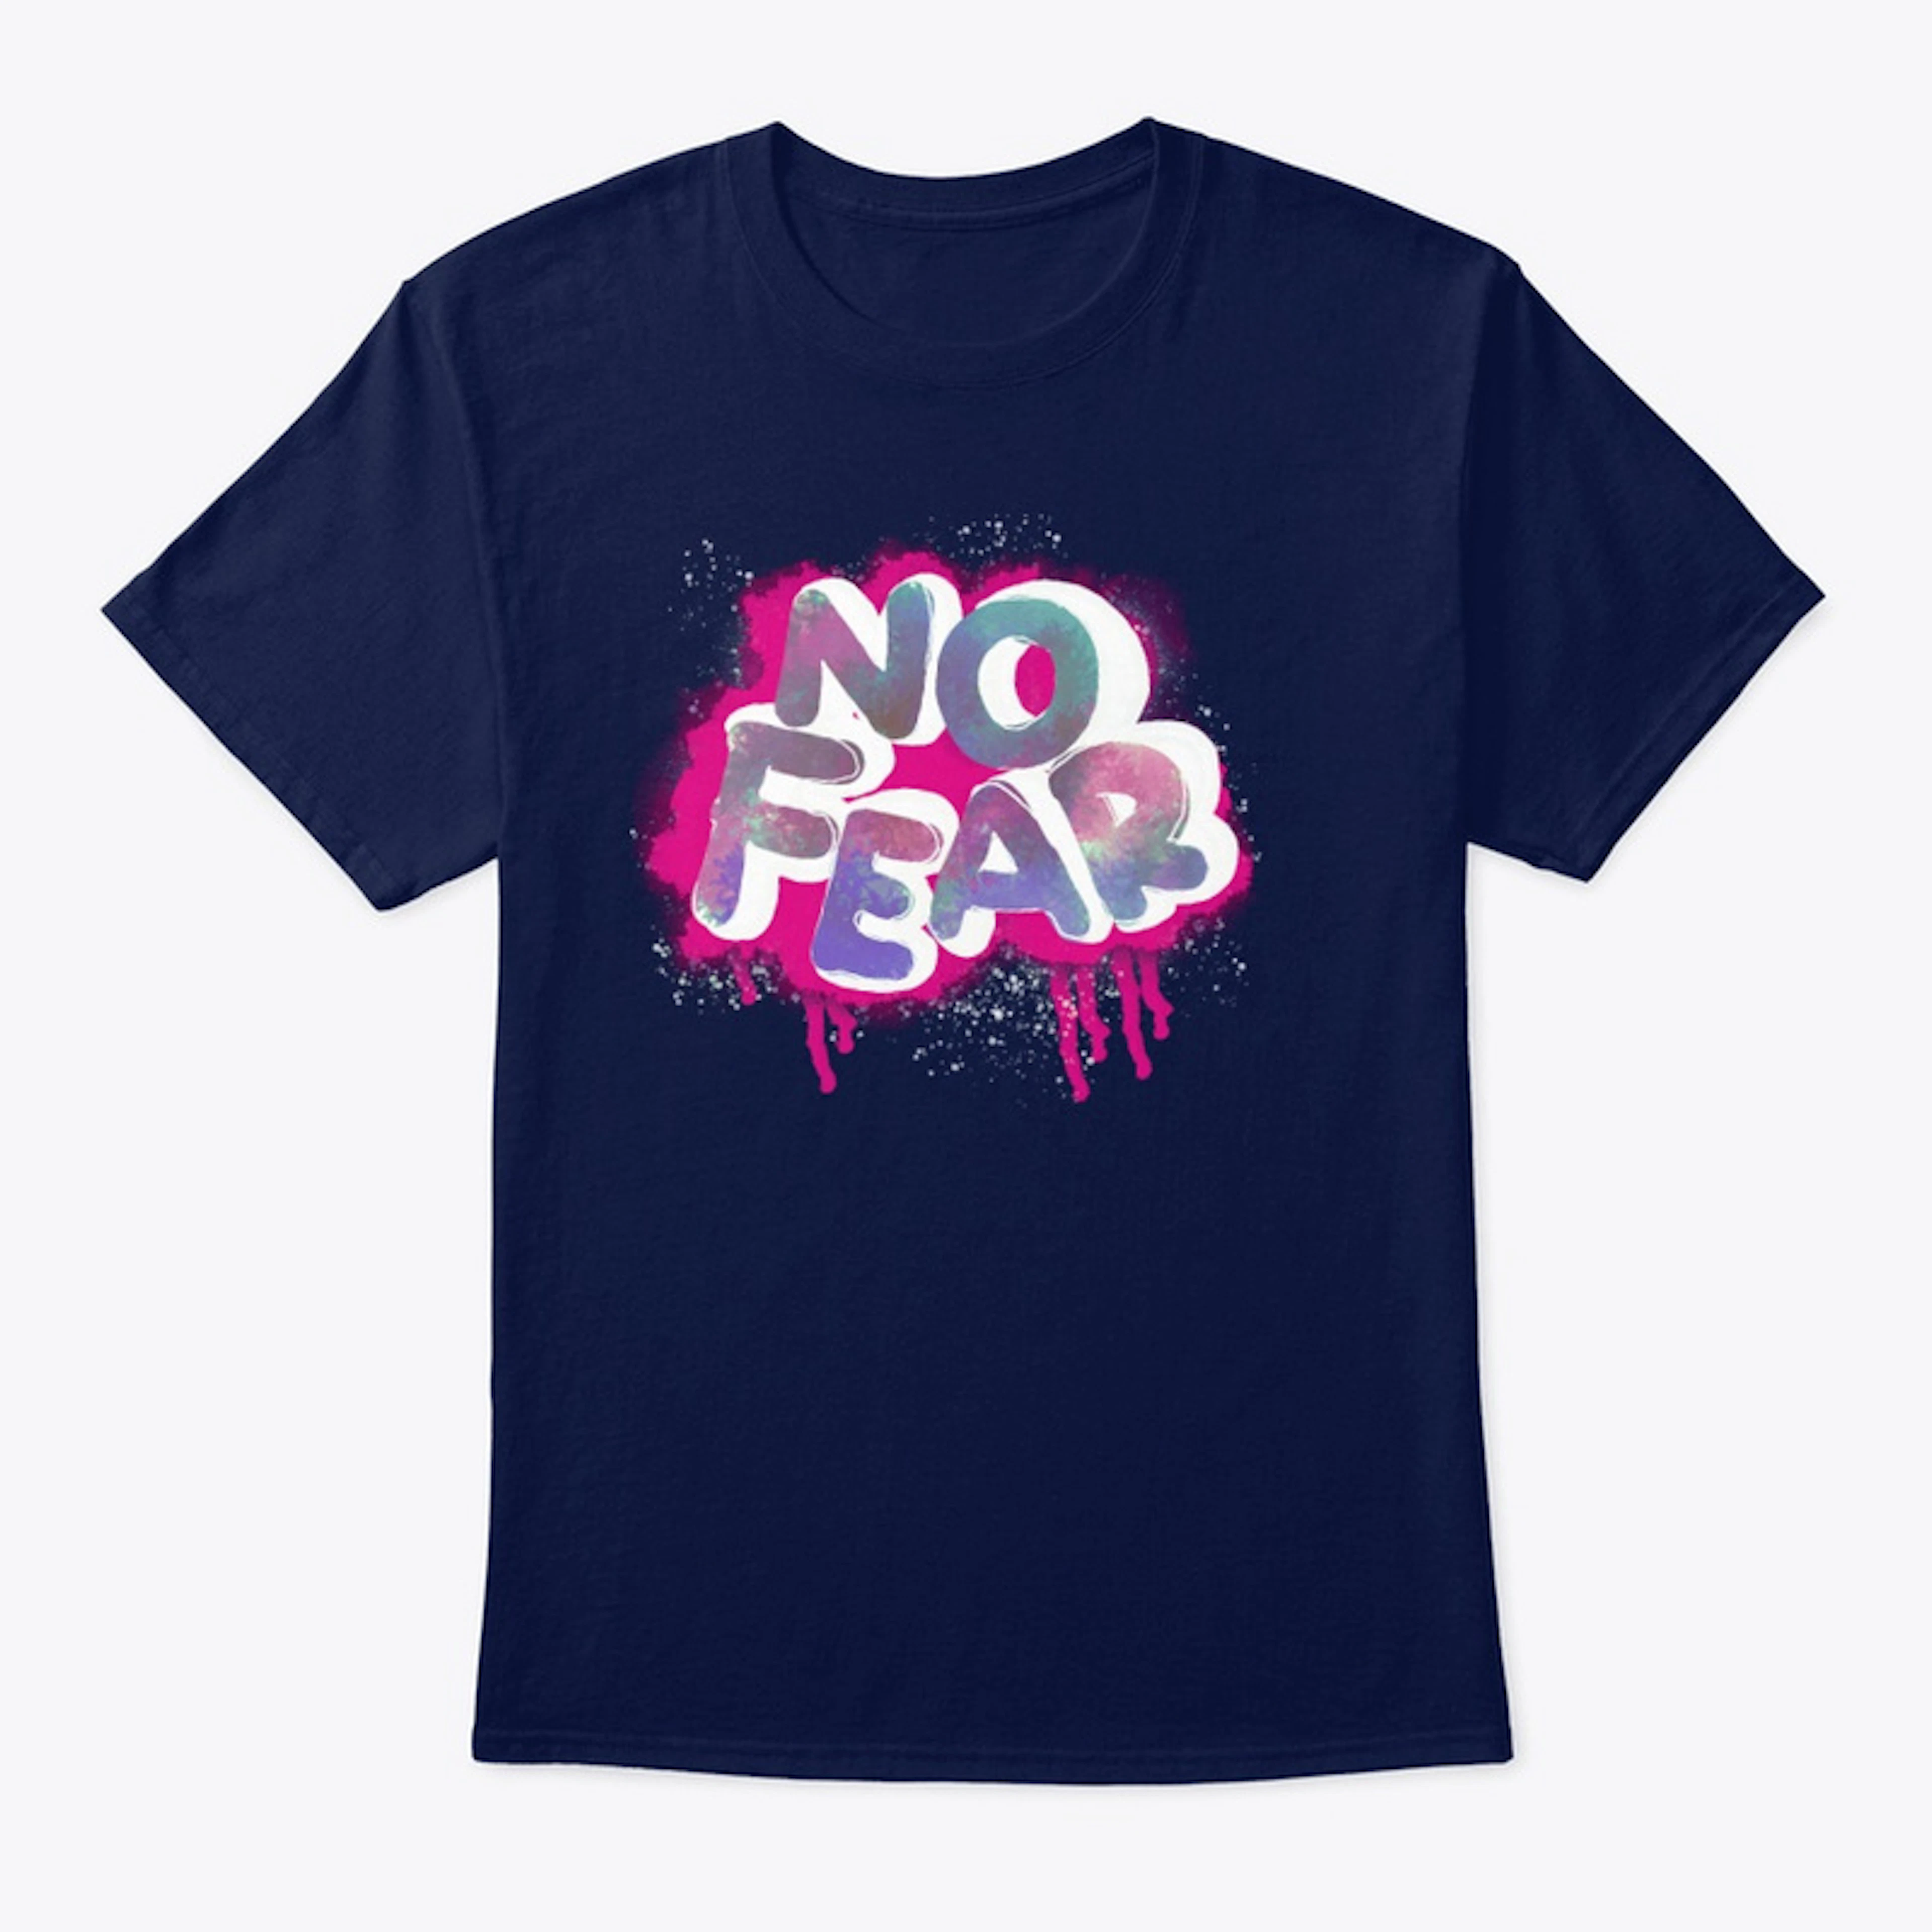 NO FEAR!